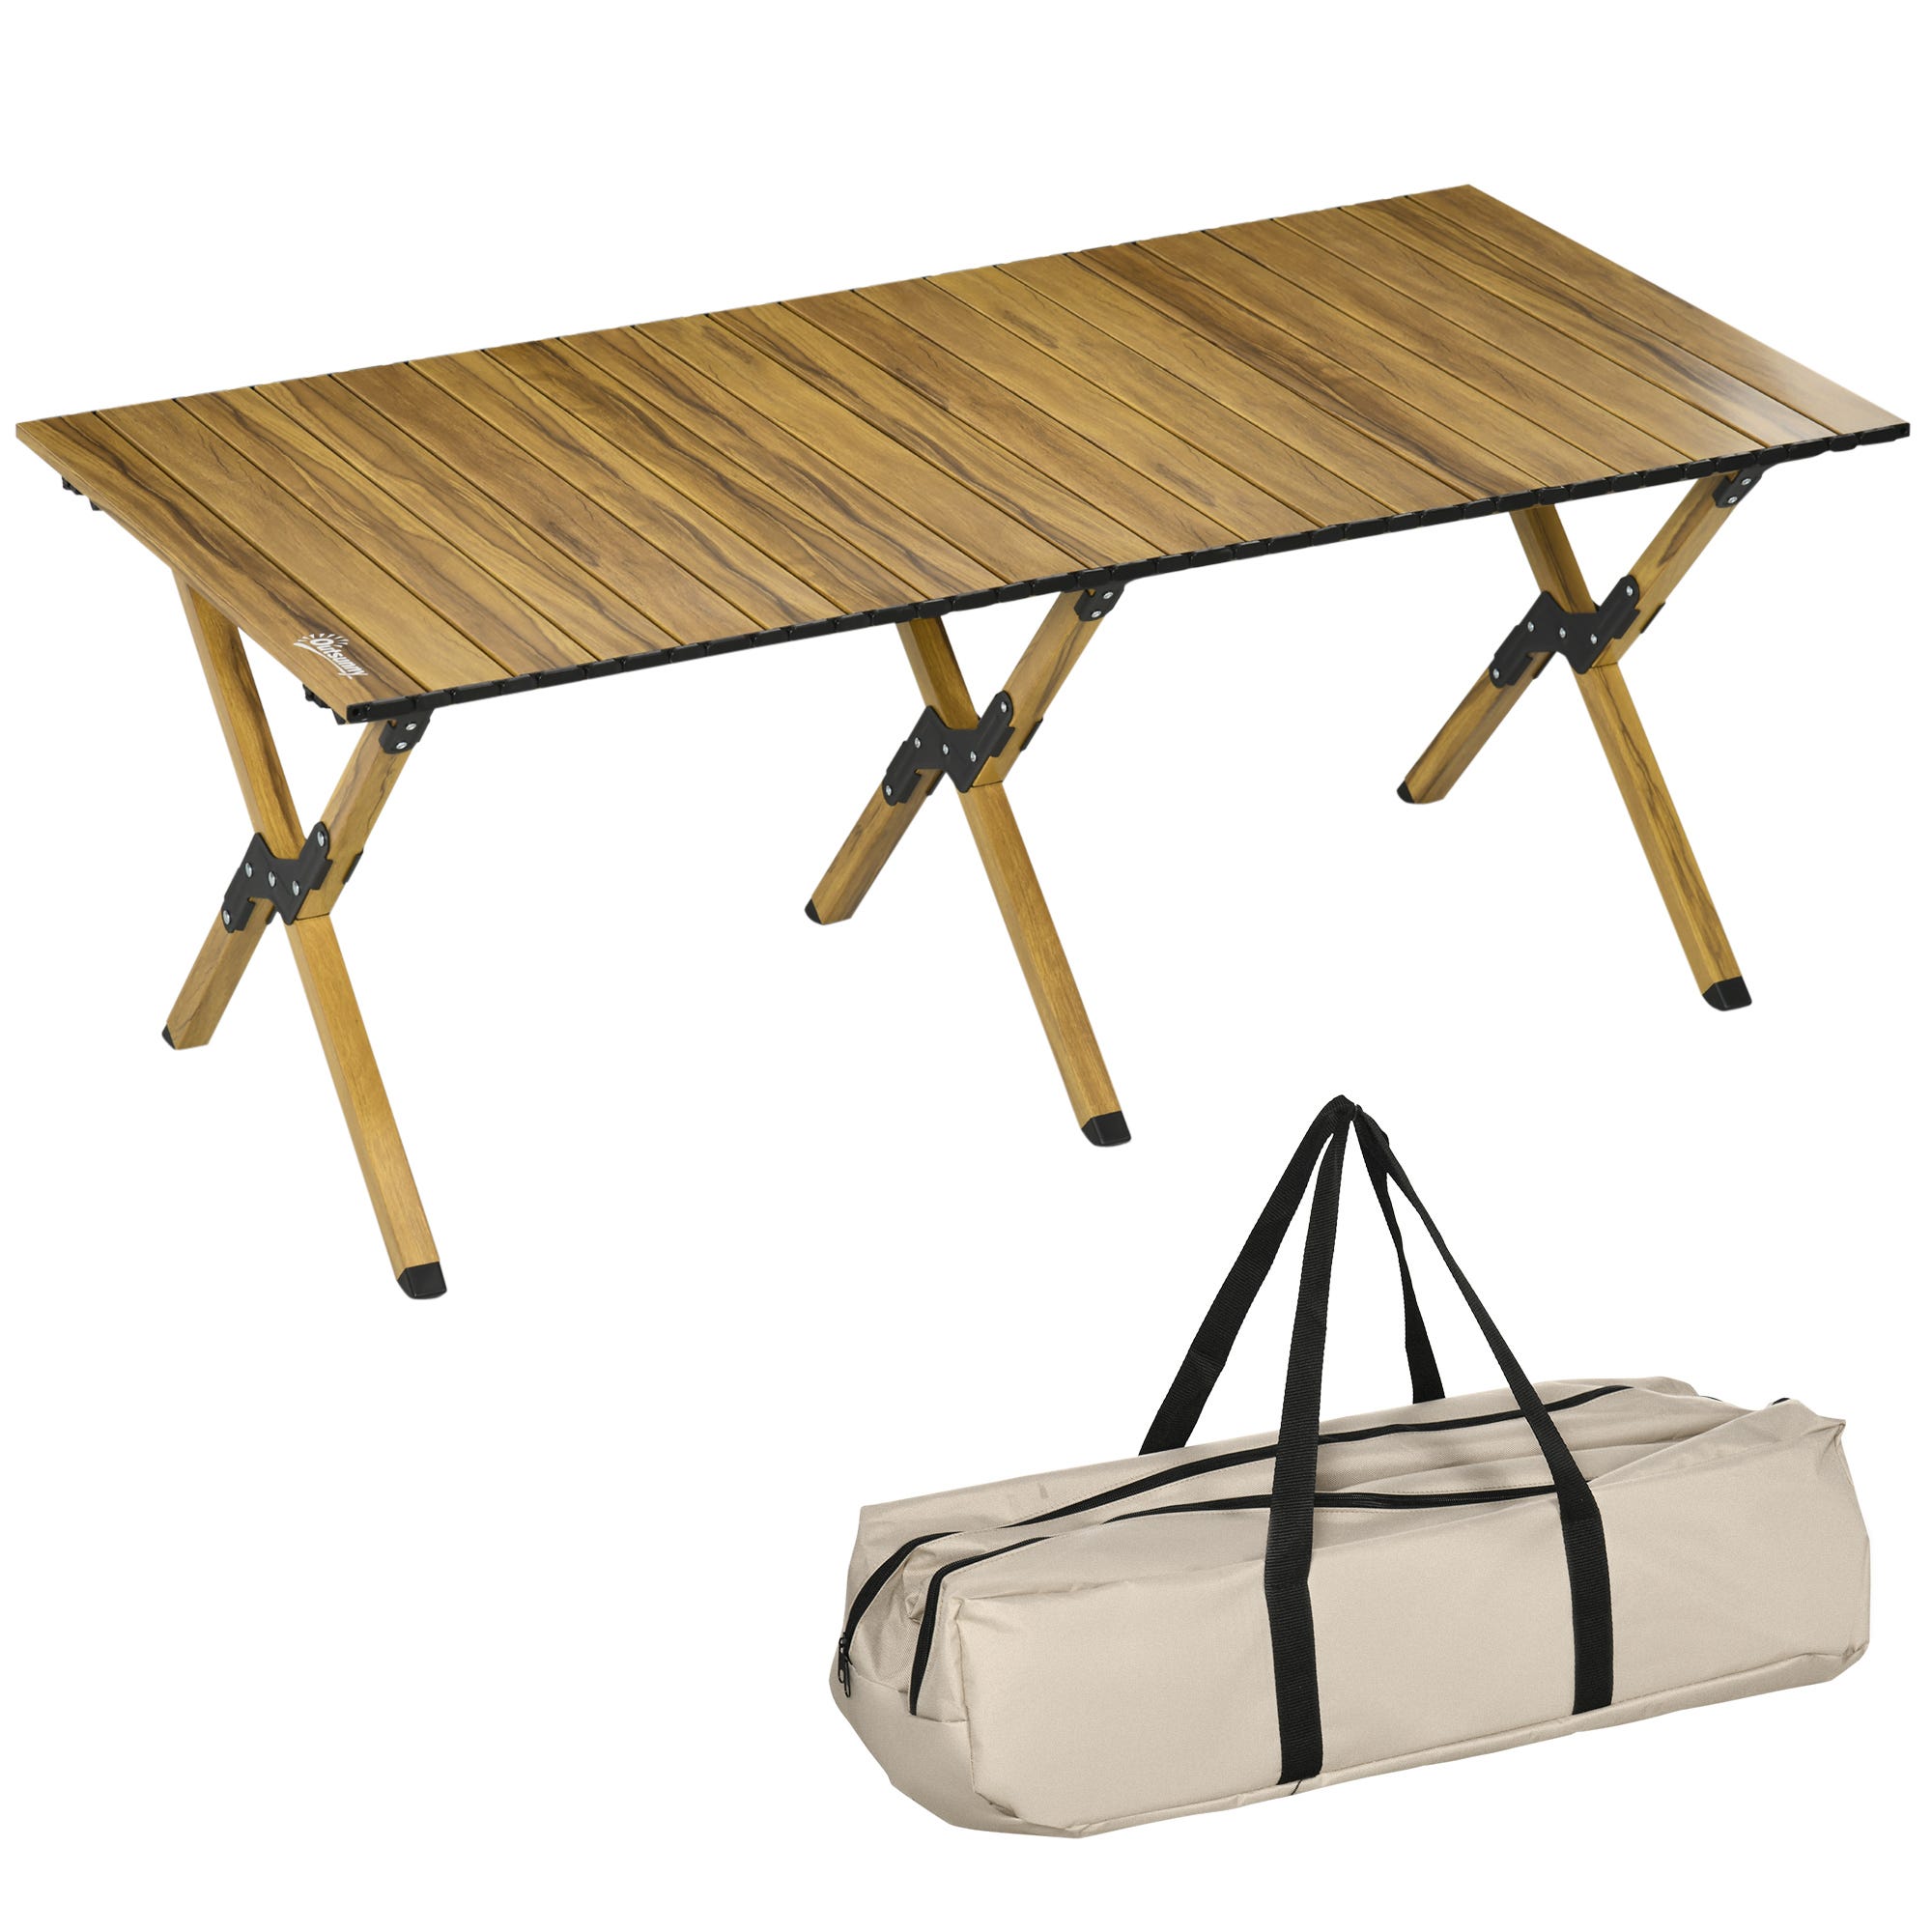 29 ideas de Mesa plegable  mesa plegable, decoración de unas, muebles  plegables